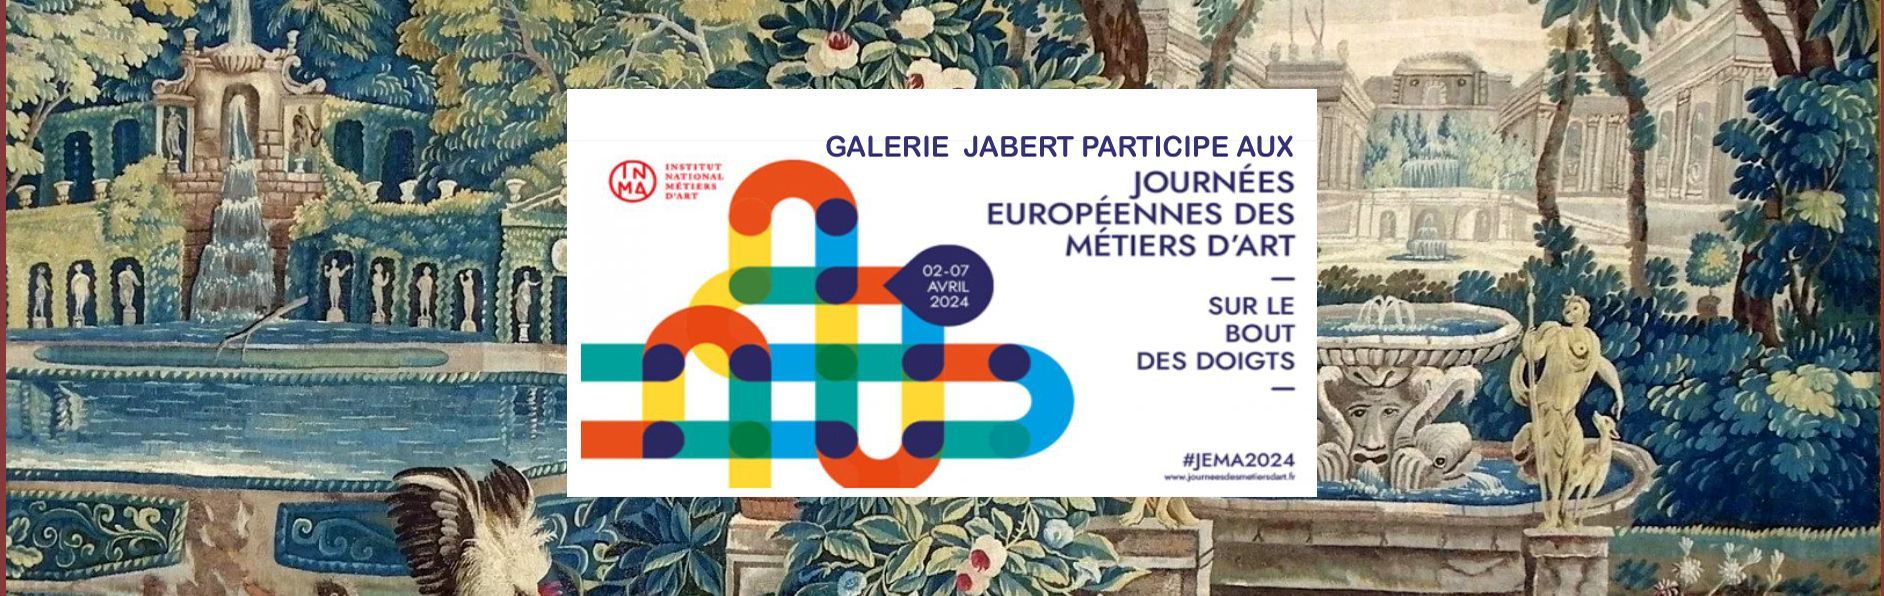 Galerie Jabert  journées européennes métiers d'art